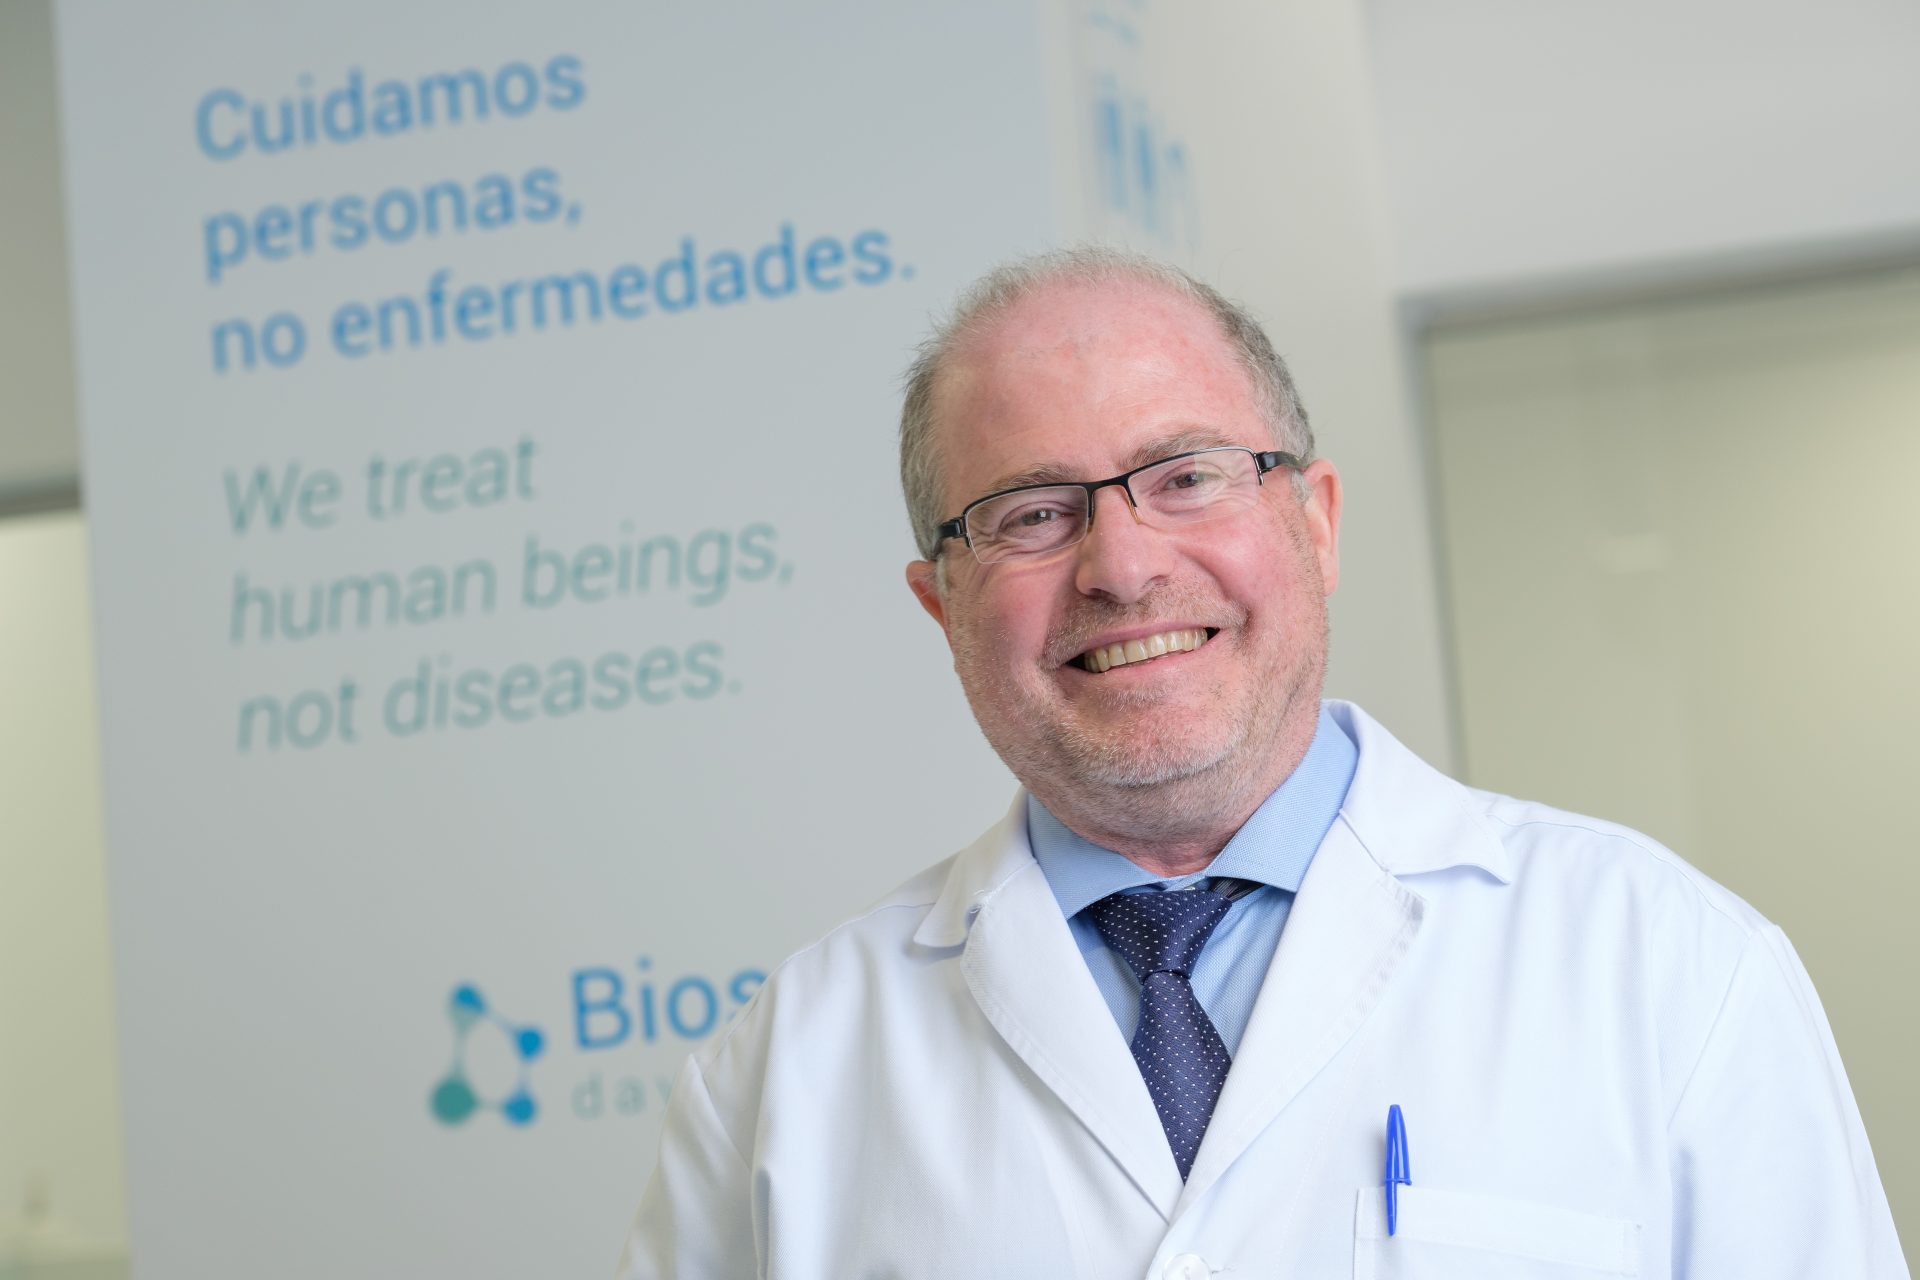 CEO and medical director Mariano Bueno Cortes